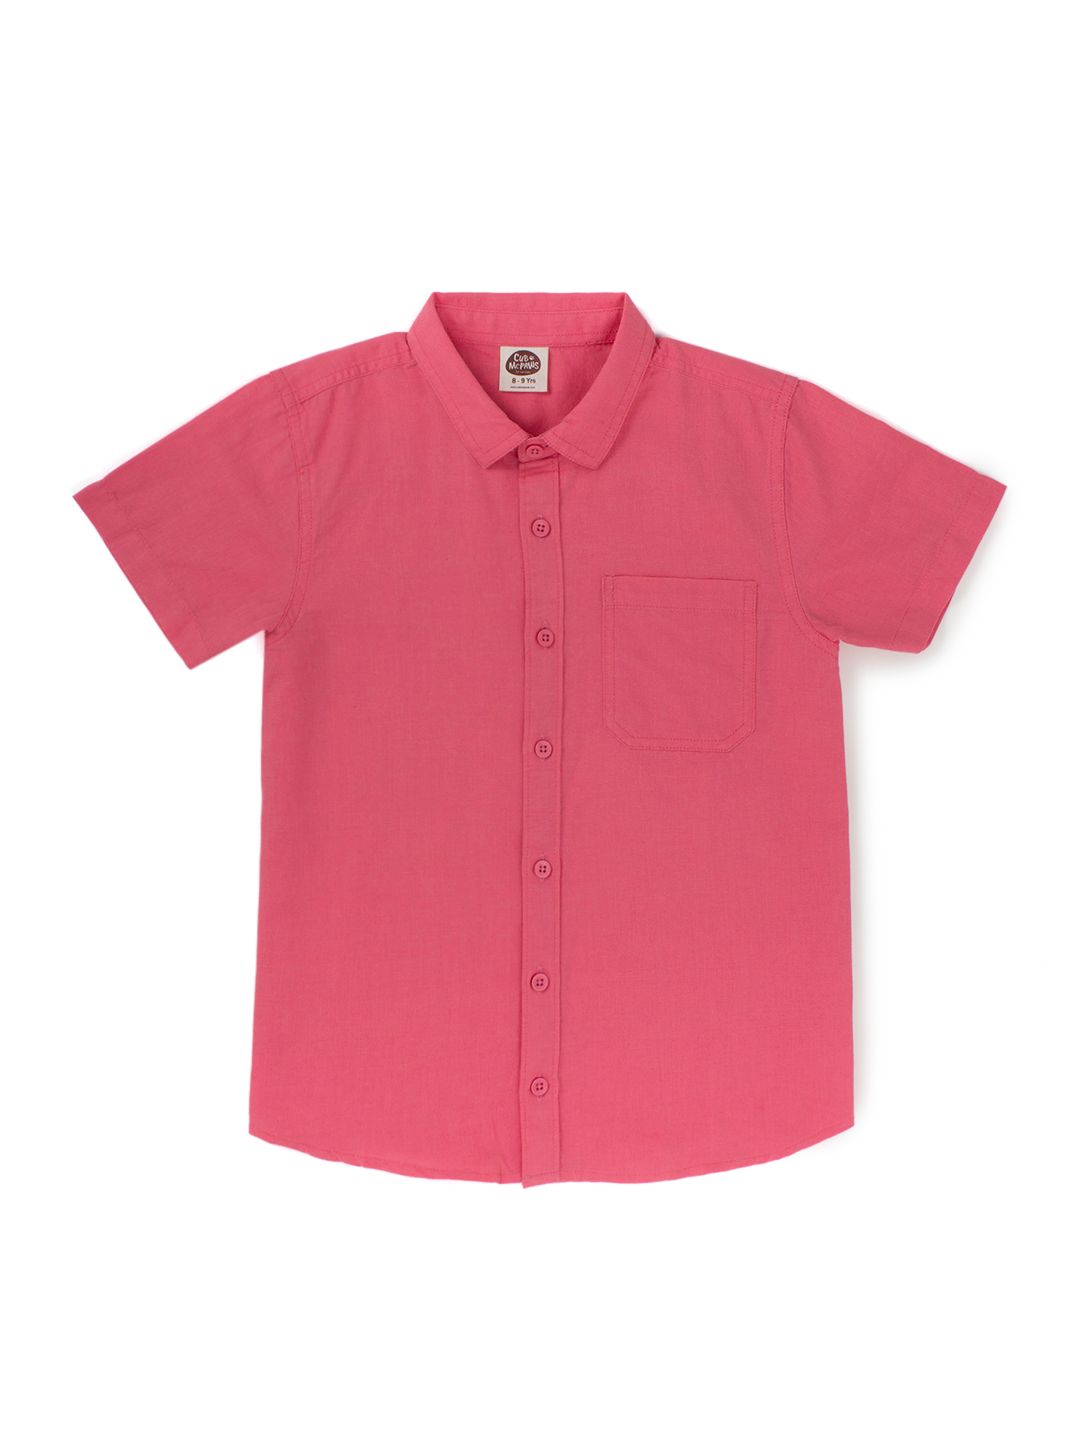 Boys Cotton Linen Shirt - Coral Red (EOSS)